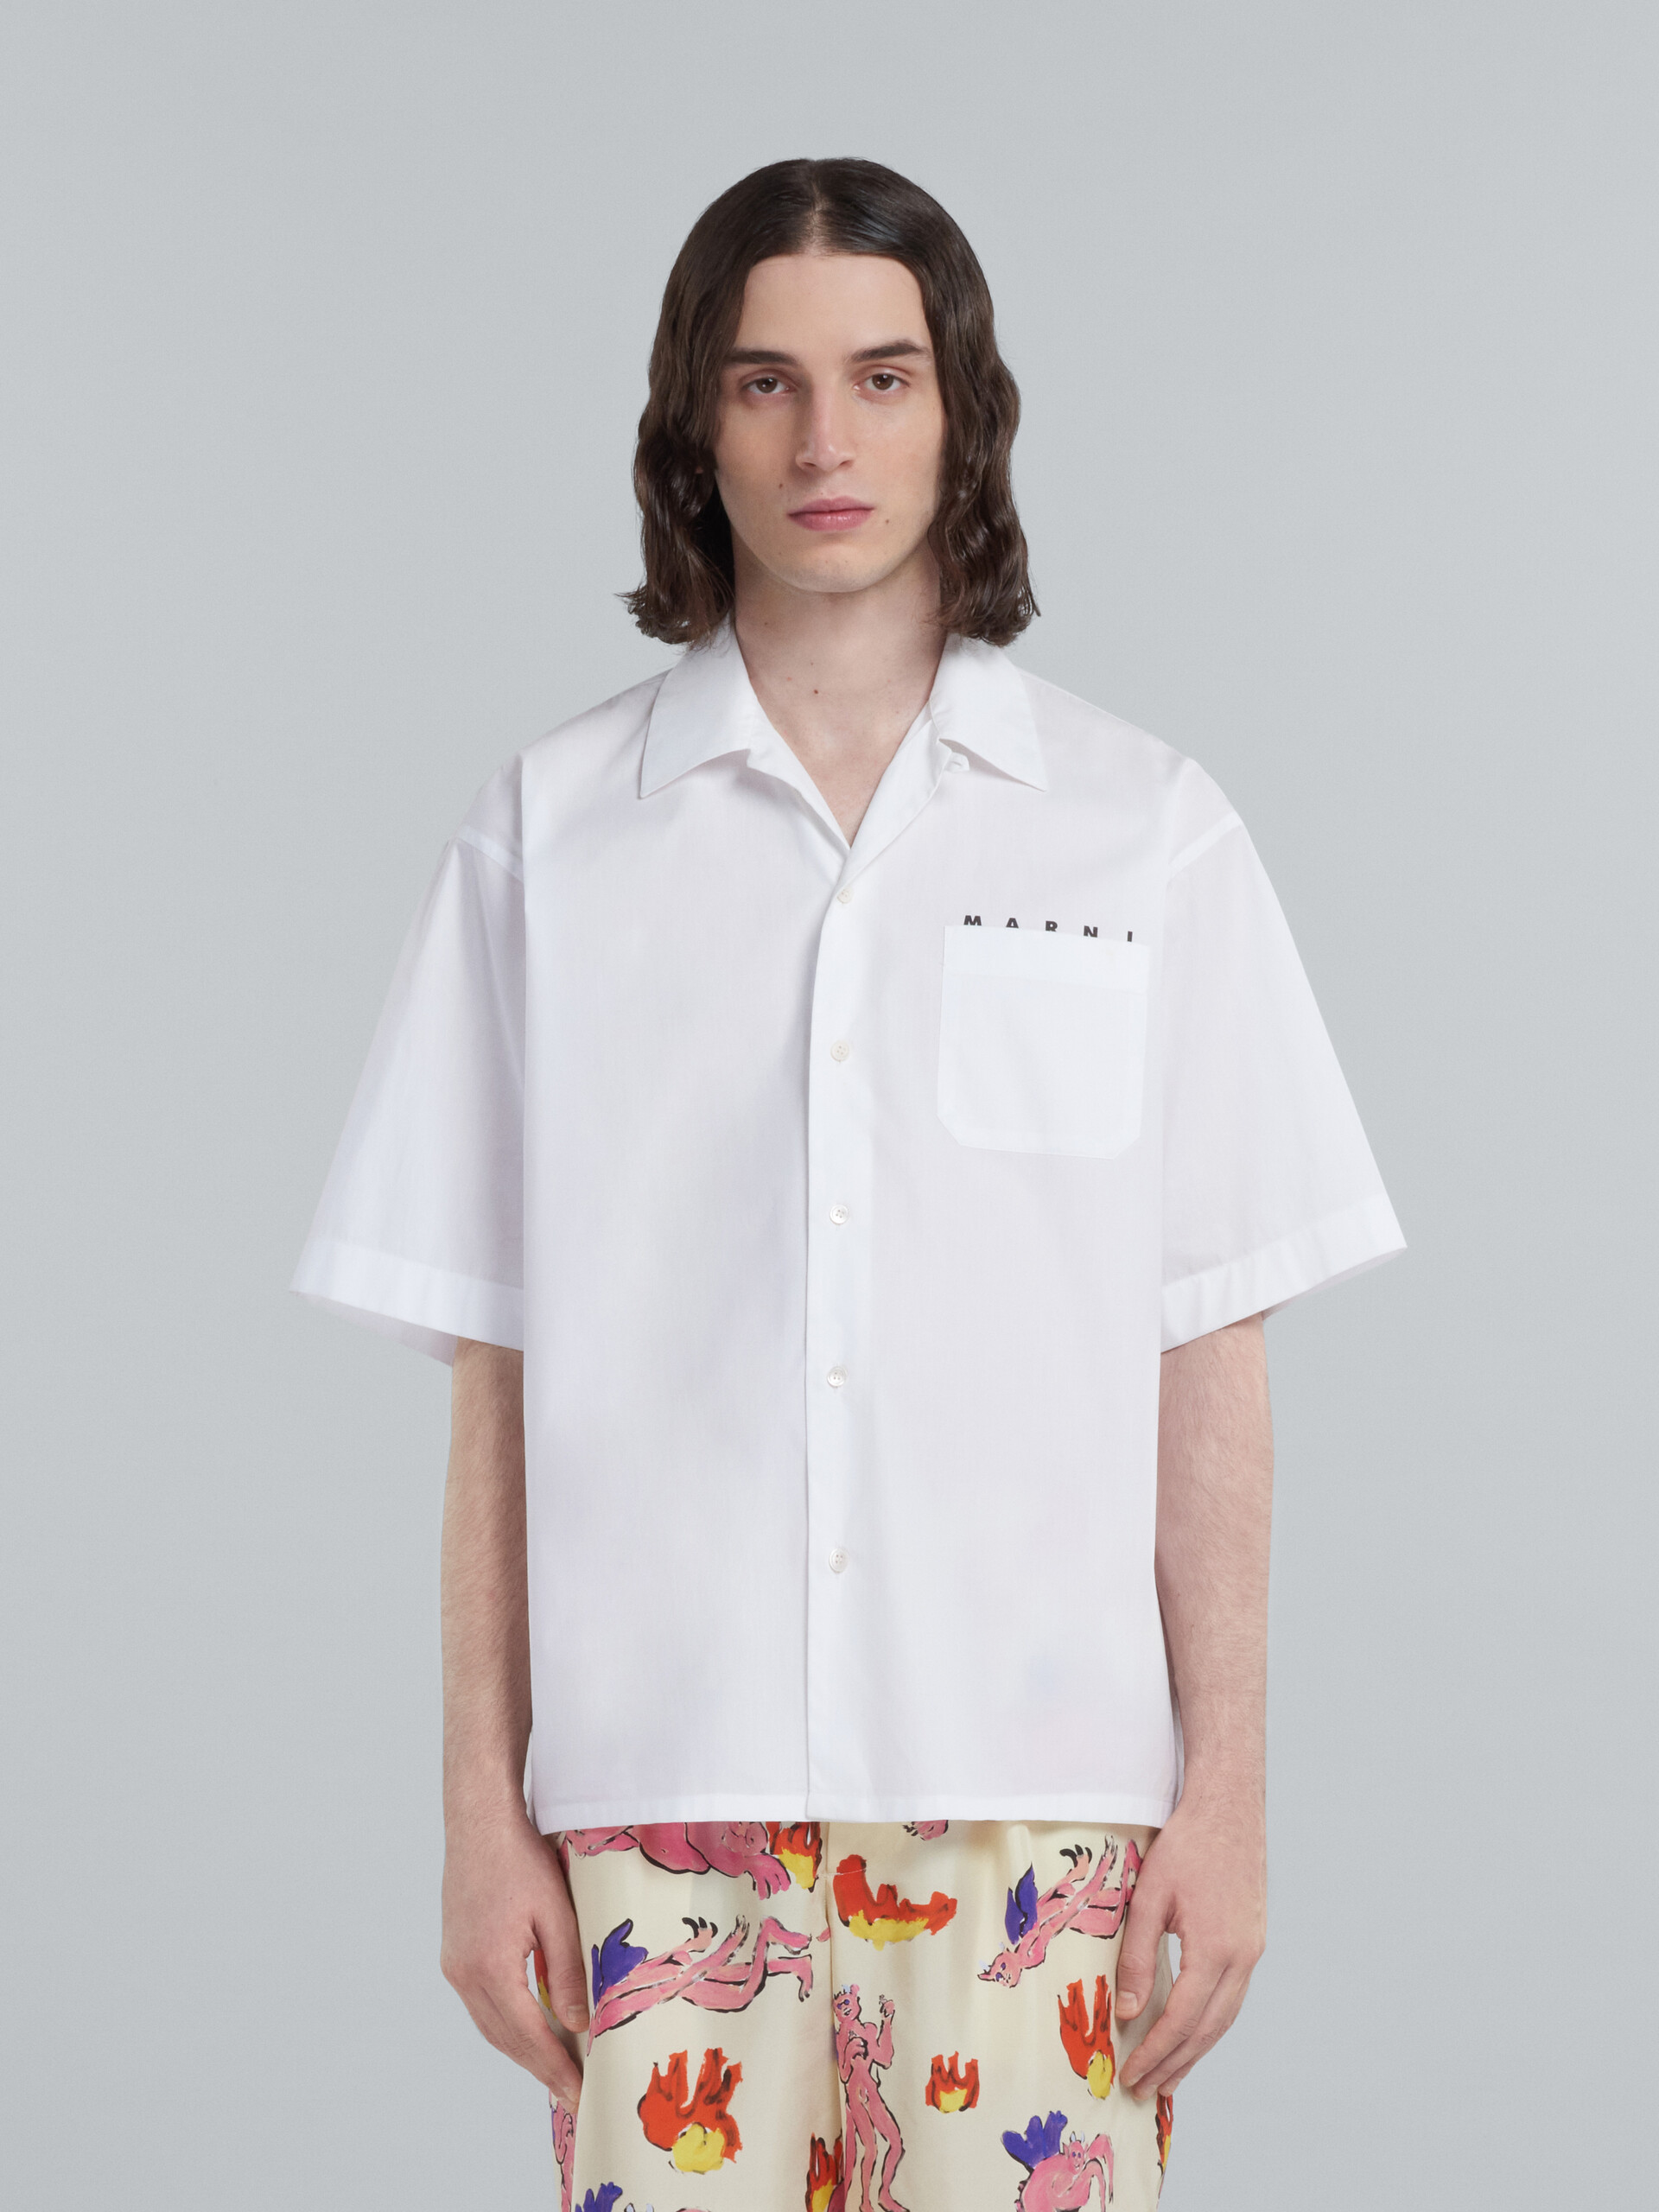 Camicia bowling in cotone tinto filo bianco - Camicie - Image 2